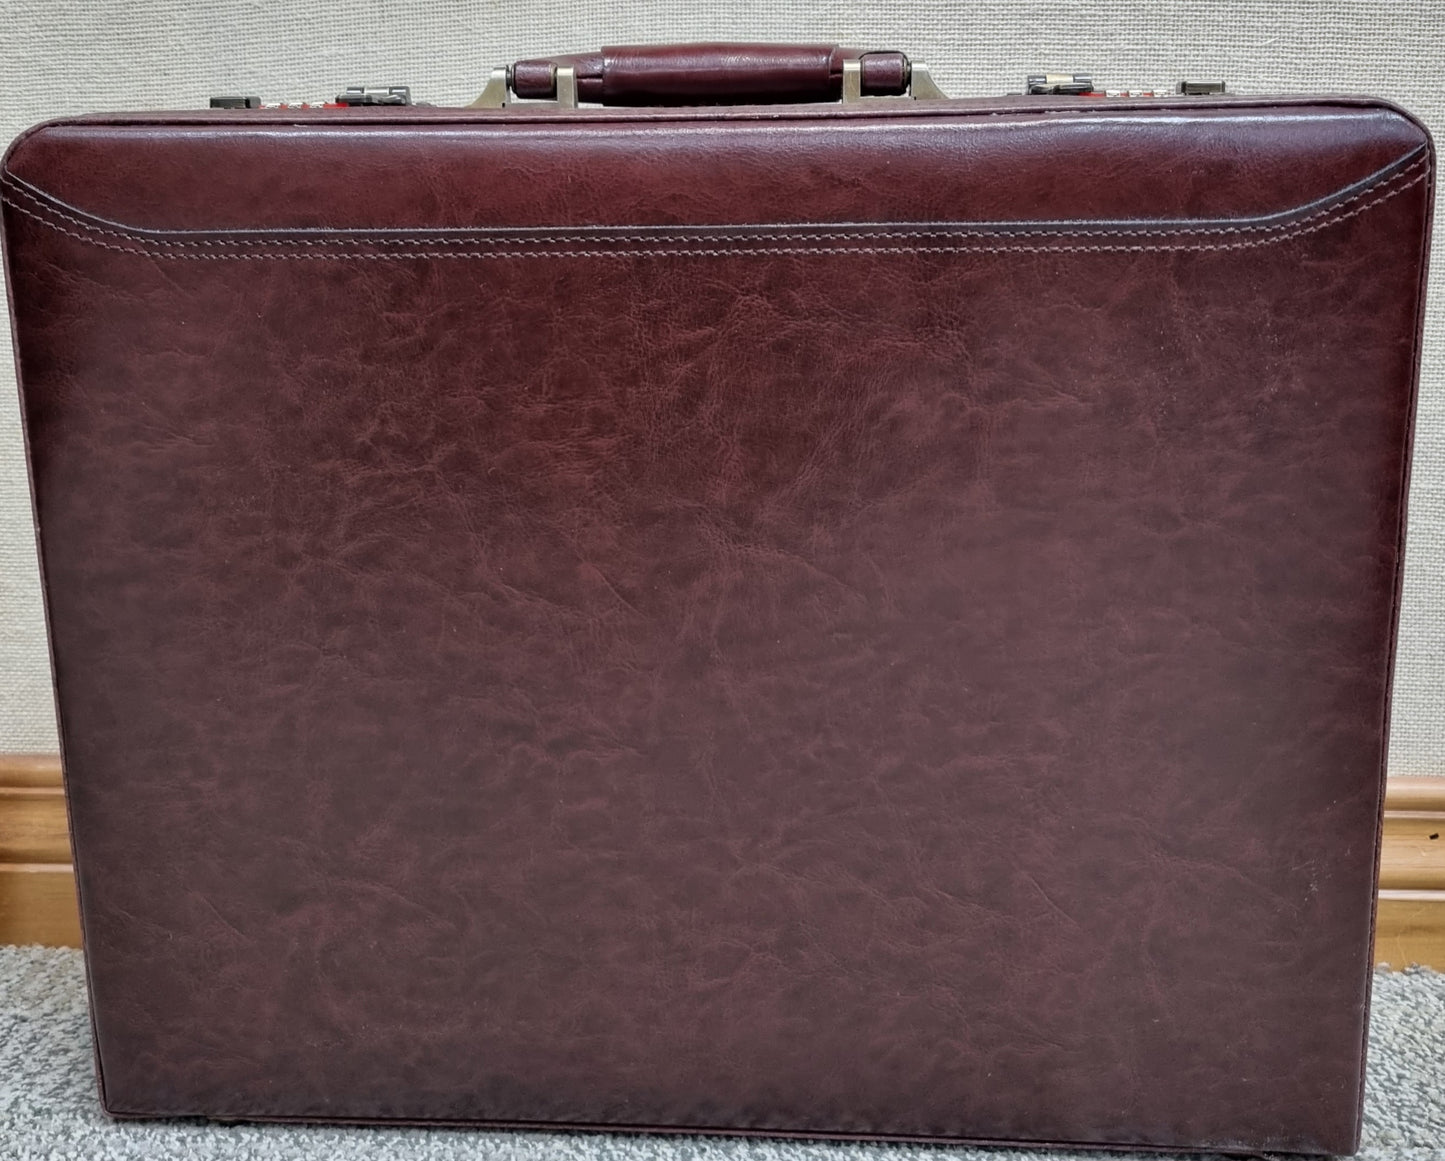 Avenue Executive Leather Briefcase